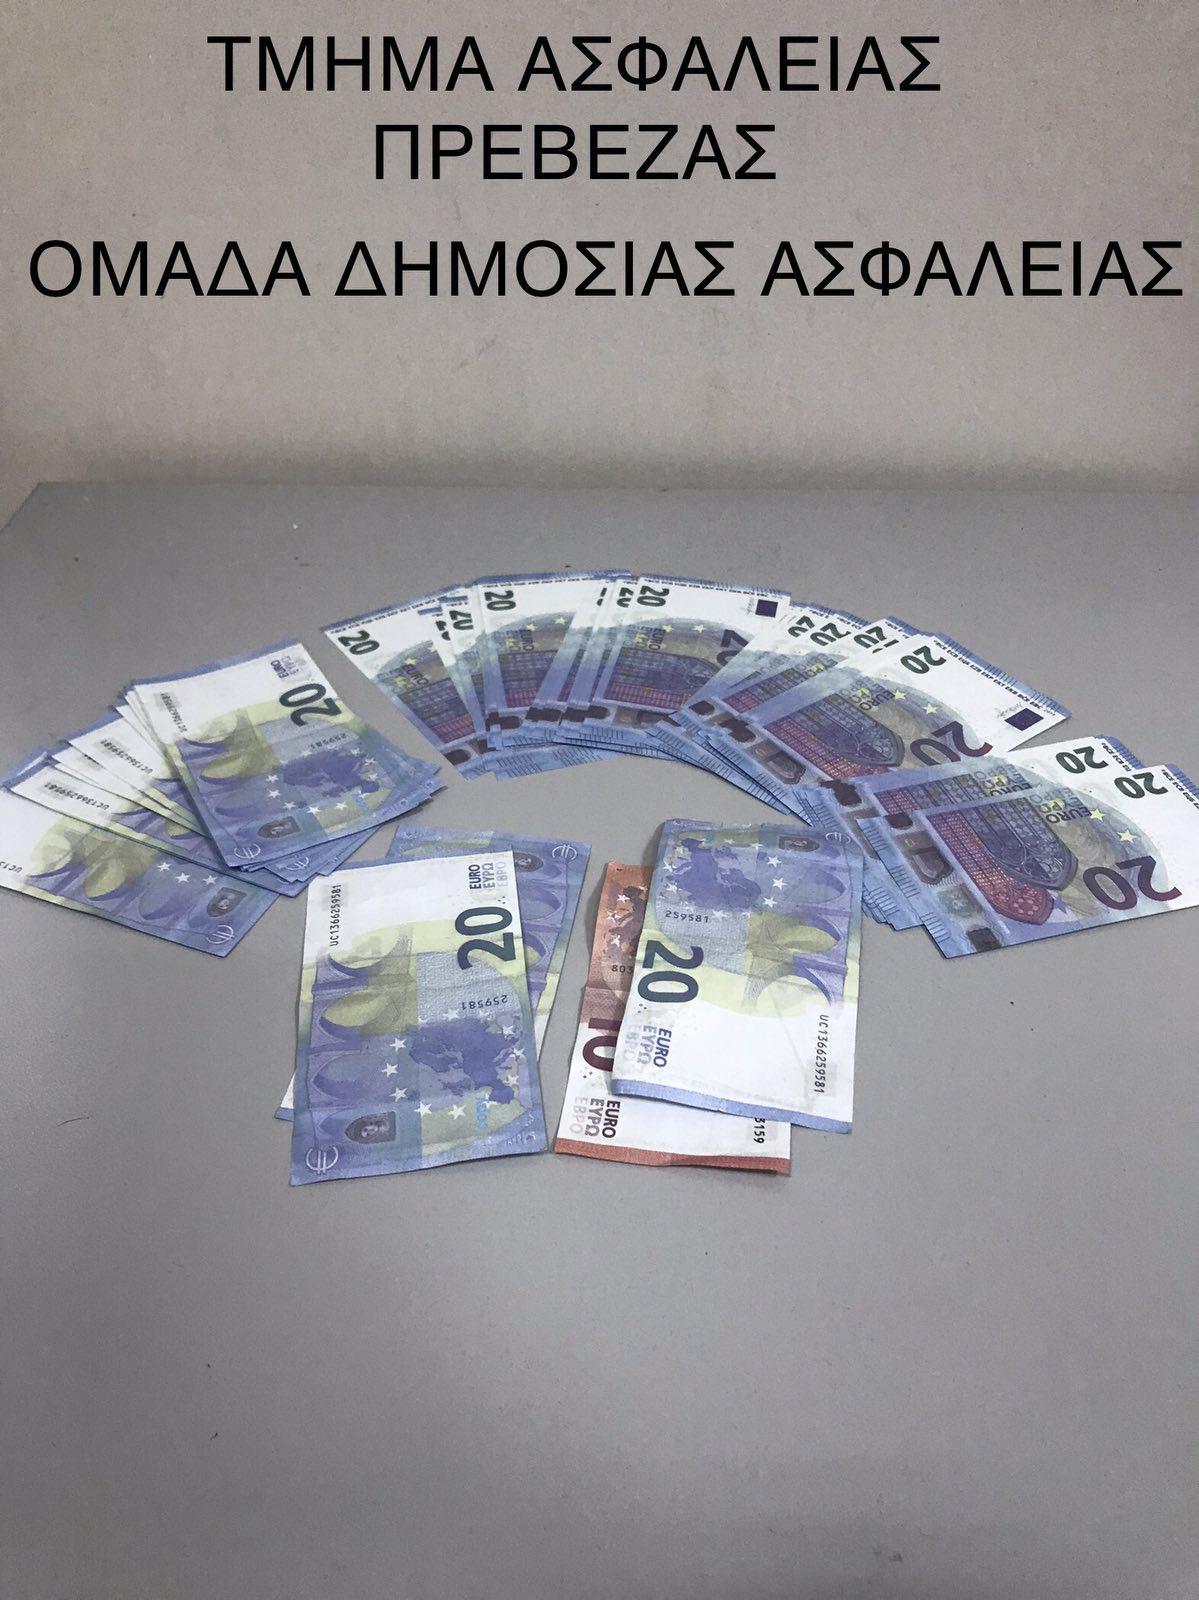 Συνελήφθησαν δύο άτομα για υποθέσεις κυκλοφορίας πλαστών χαρτονομισμάτων  στην Πρέβεζα και ταυτοποιήθηκε ακόμη ένας συνεργός τους - On Preveza News -  24ωρη ενημέρωση από την Πρέβεζα, την Ελλάδα και τον Κόσμο